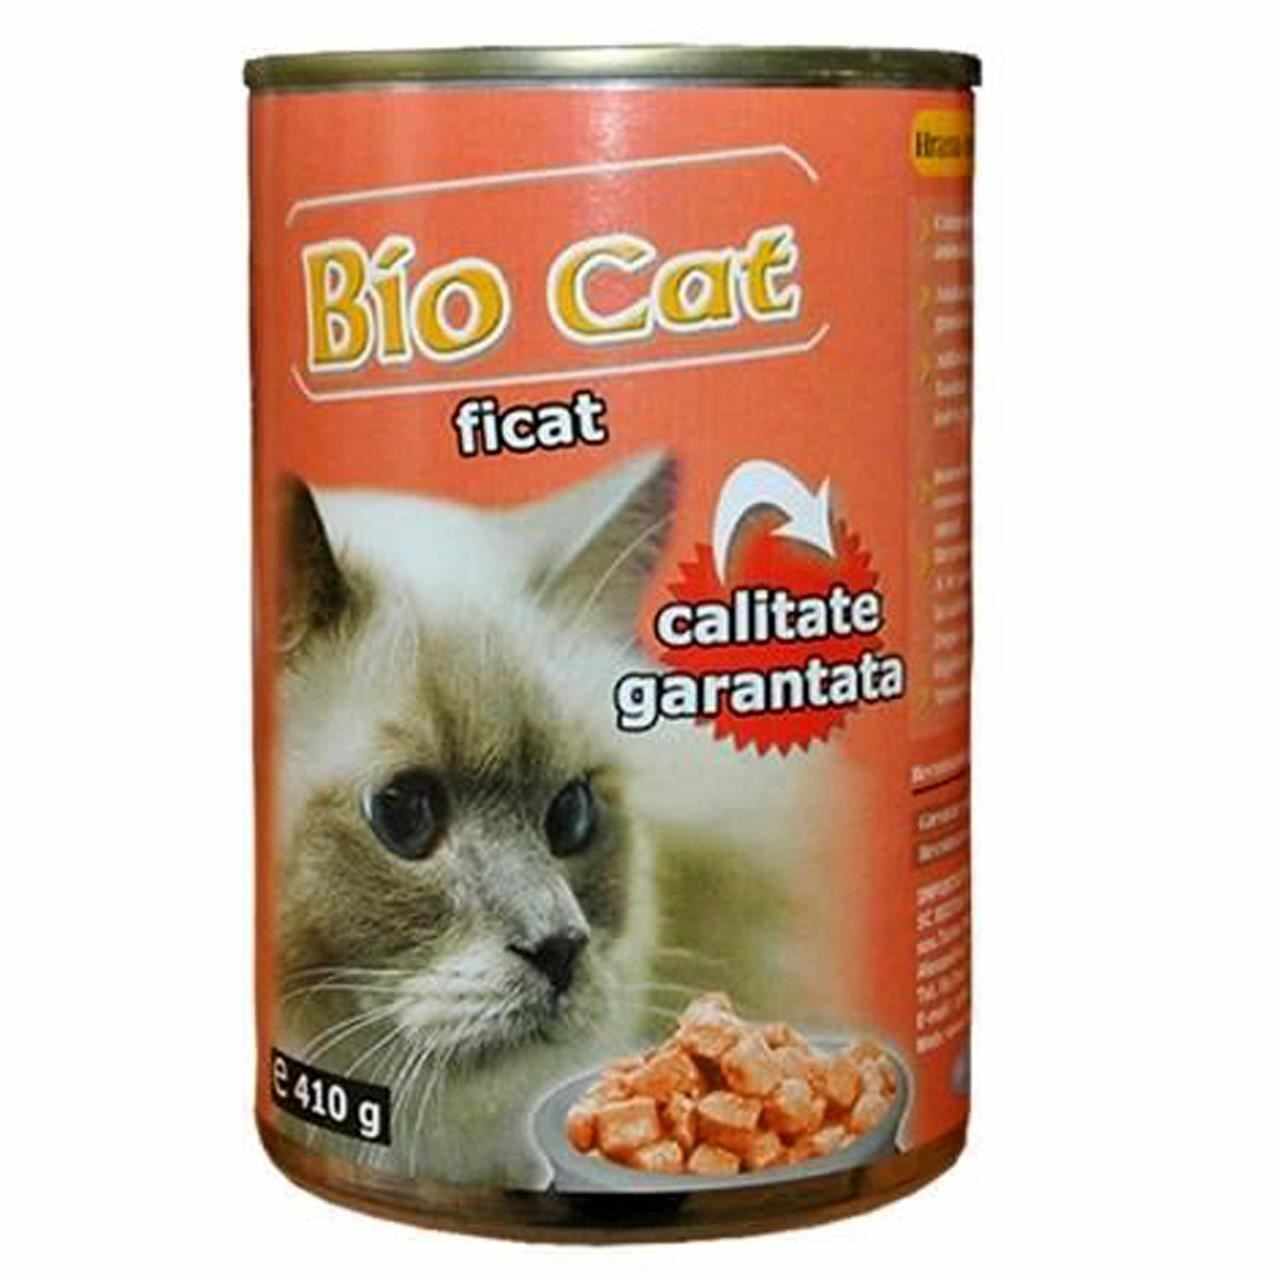 Bio Cat Ficat, 410 g